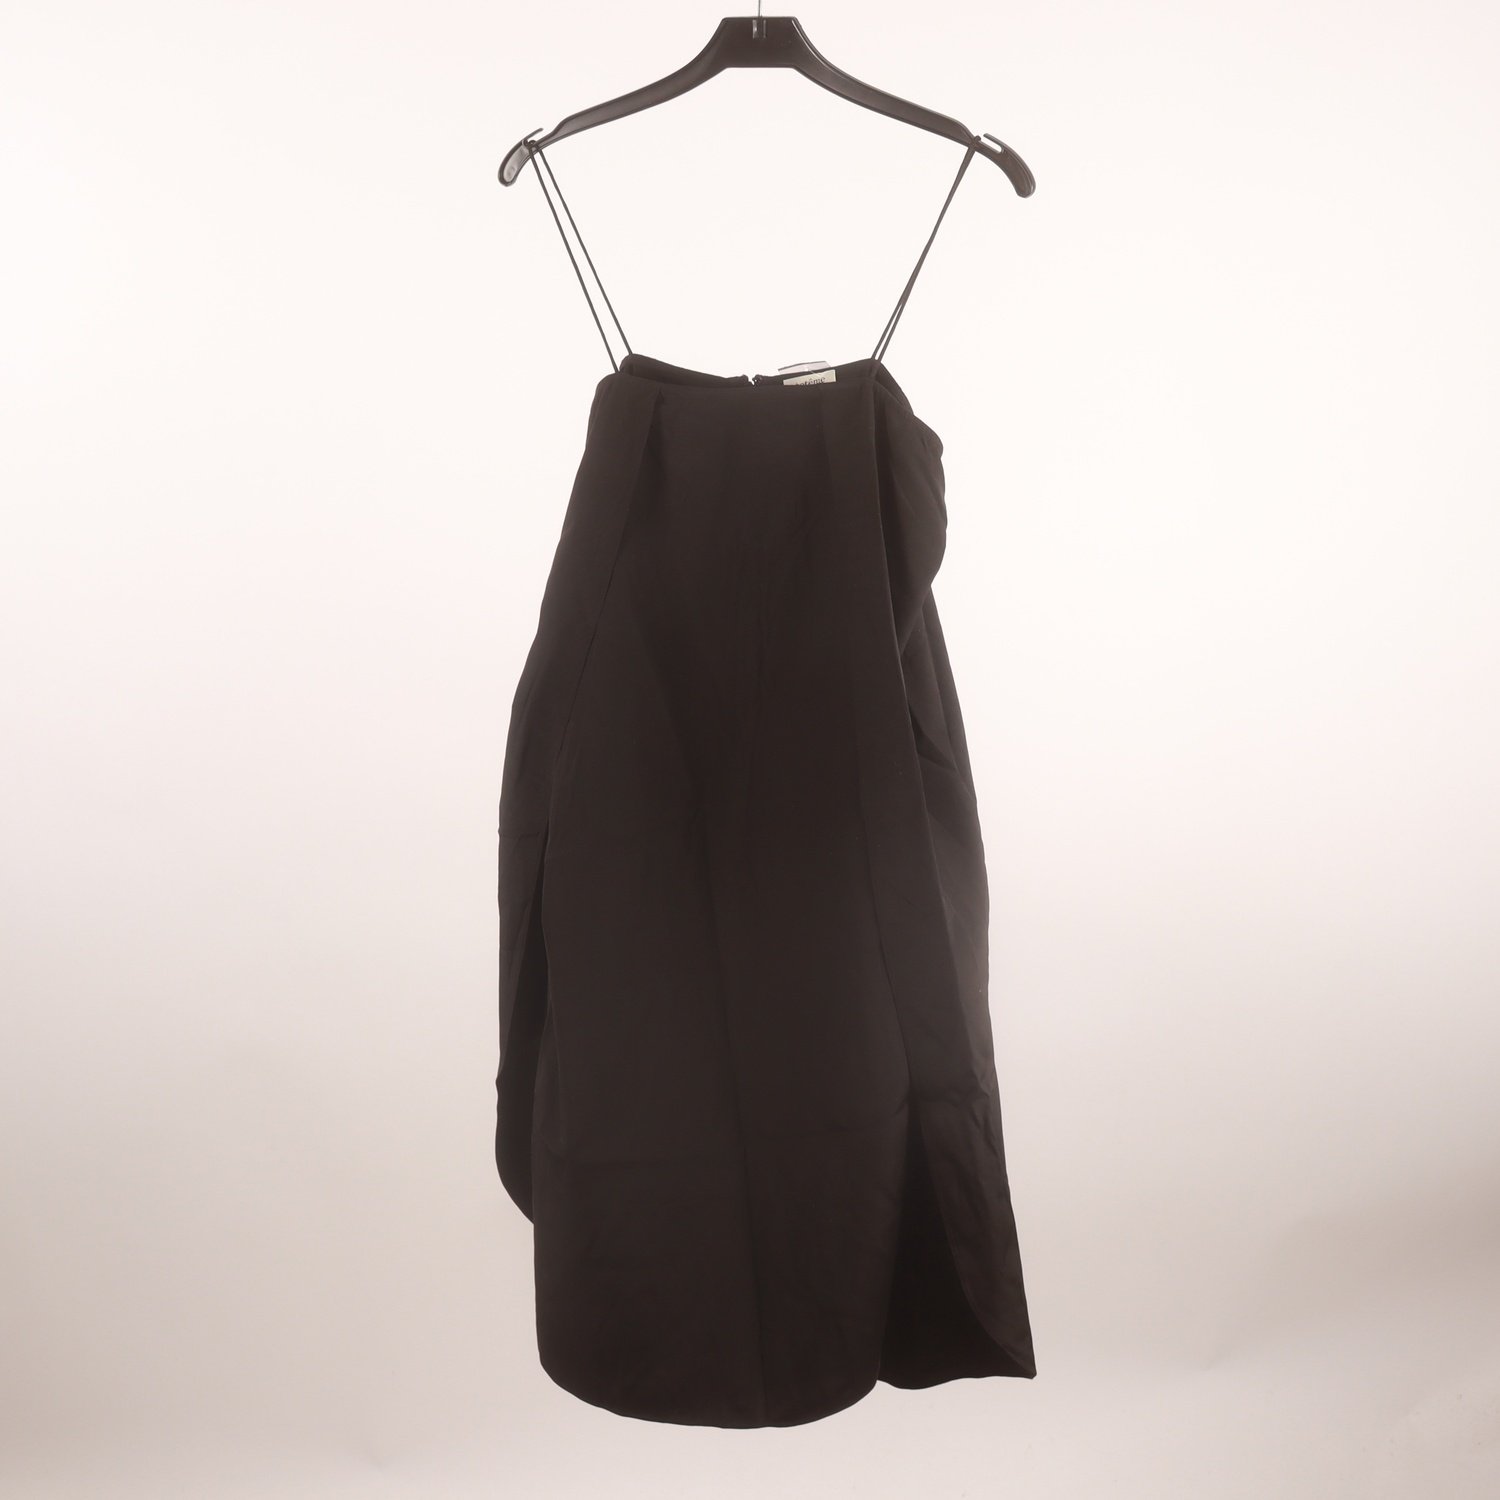 Klänning, Totême, svart, 100 % silk, stl. S